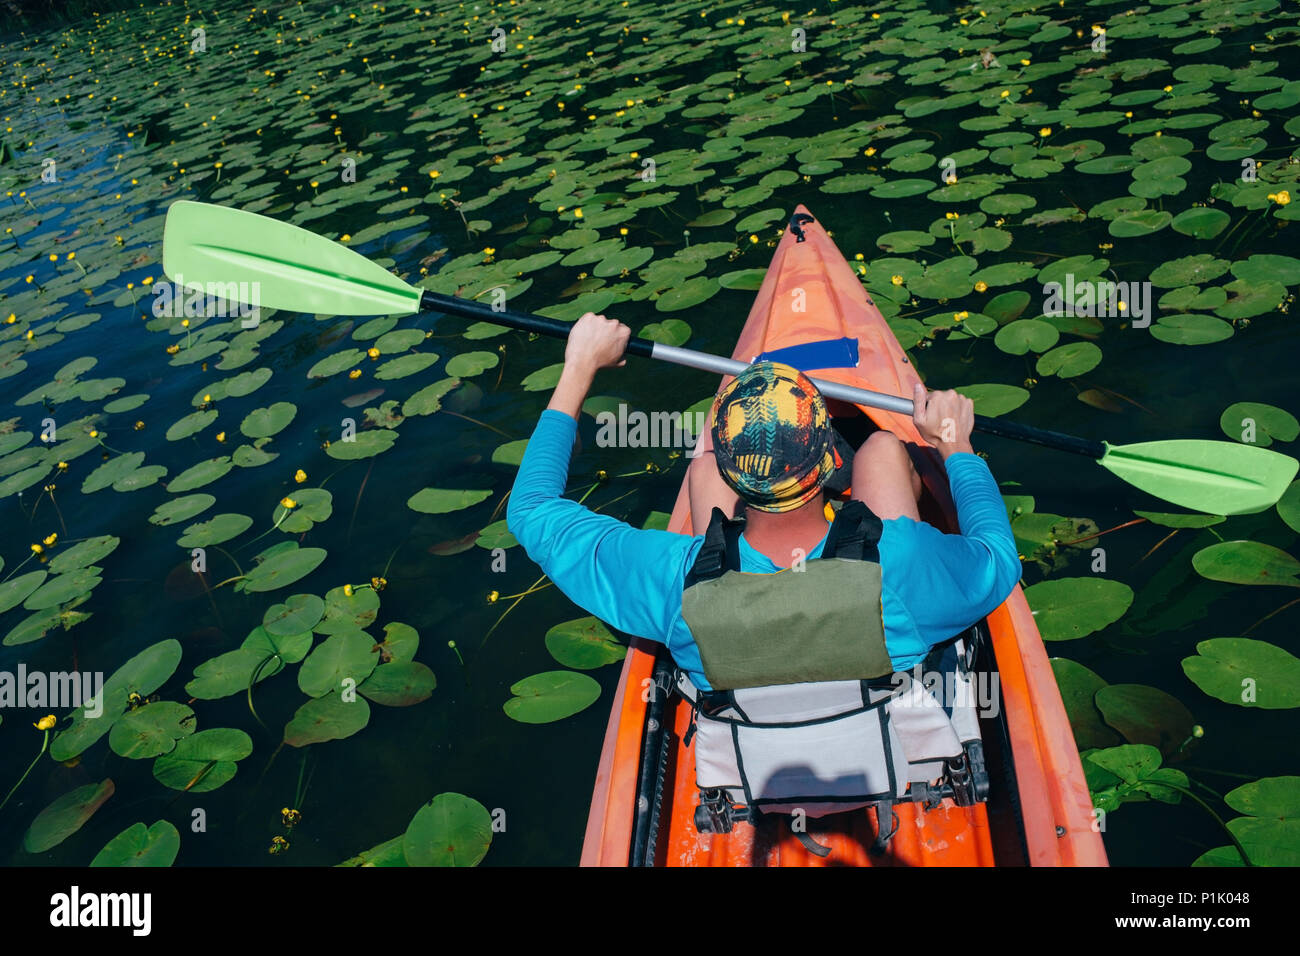 L'uomo kayak, paletta oscillante in aria a fiume con un sacco di ninfee, vista posteriore, ad alto angolo di visione Foto Stock